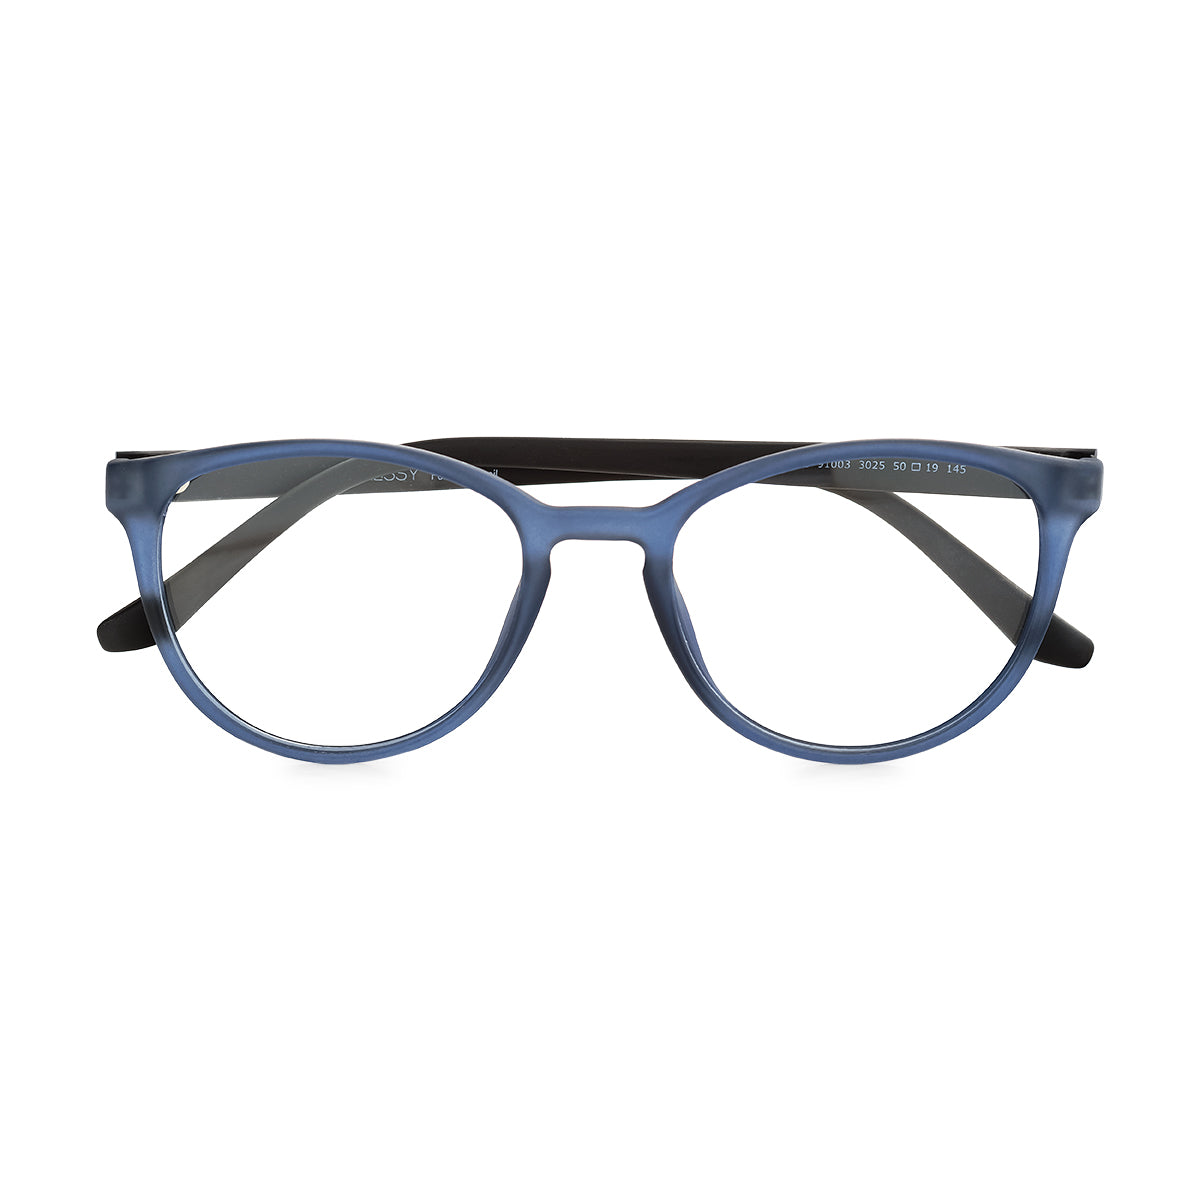 Óculos de Grau Kessy 900